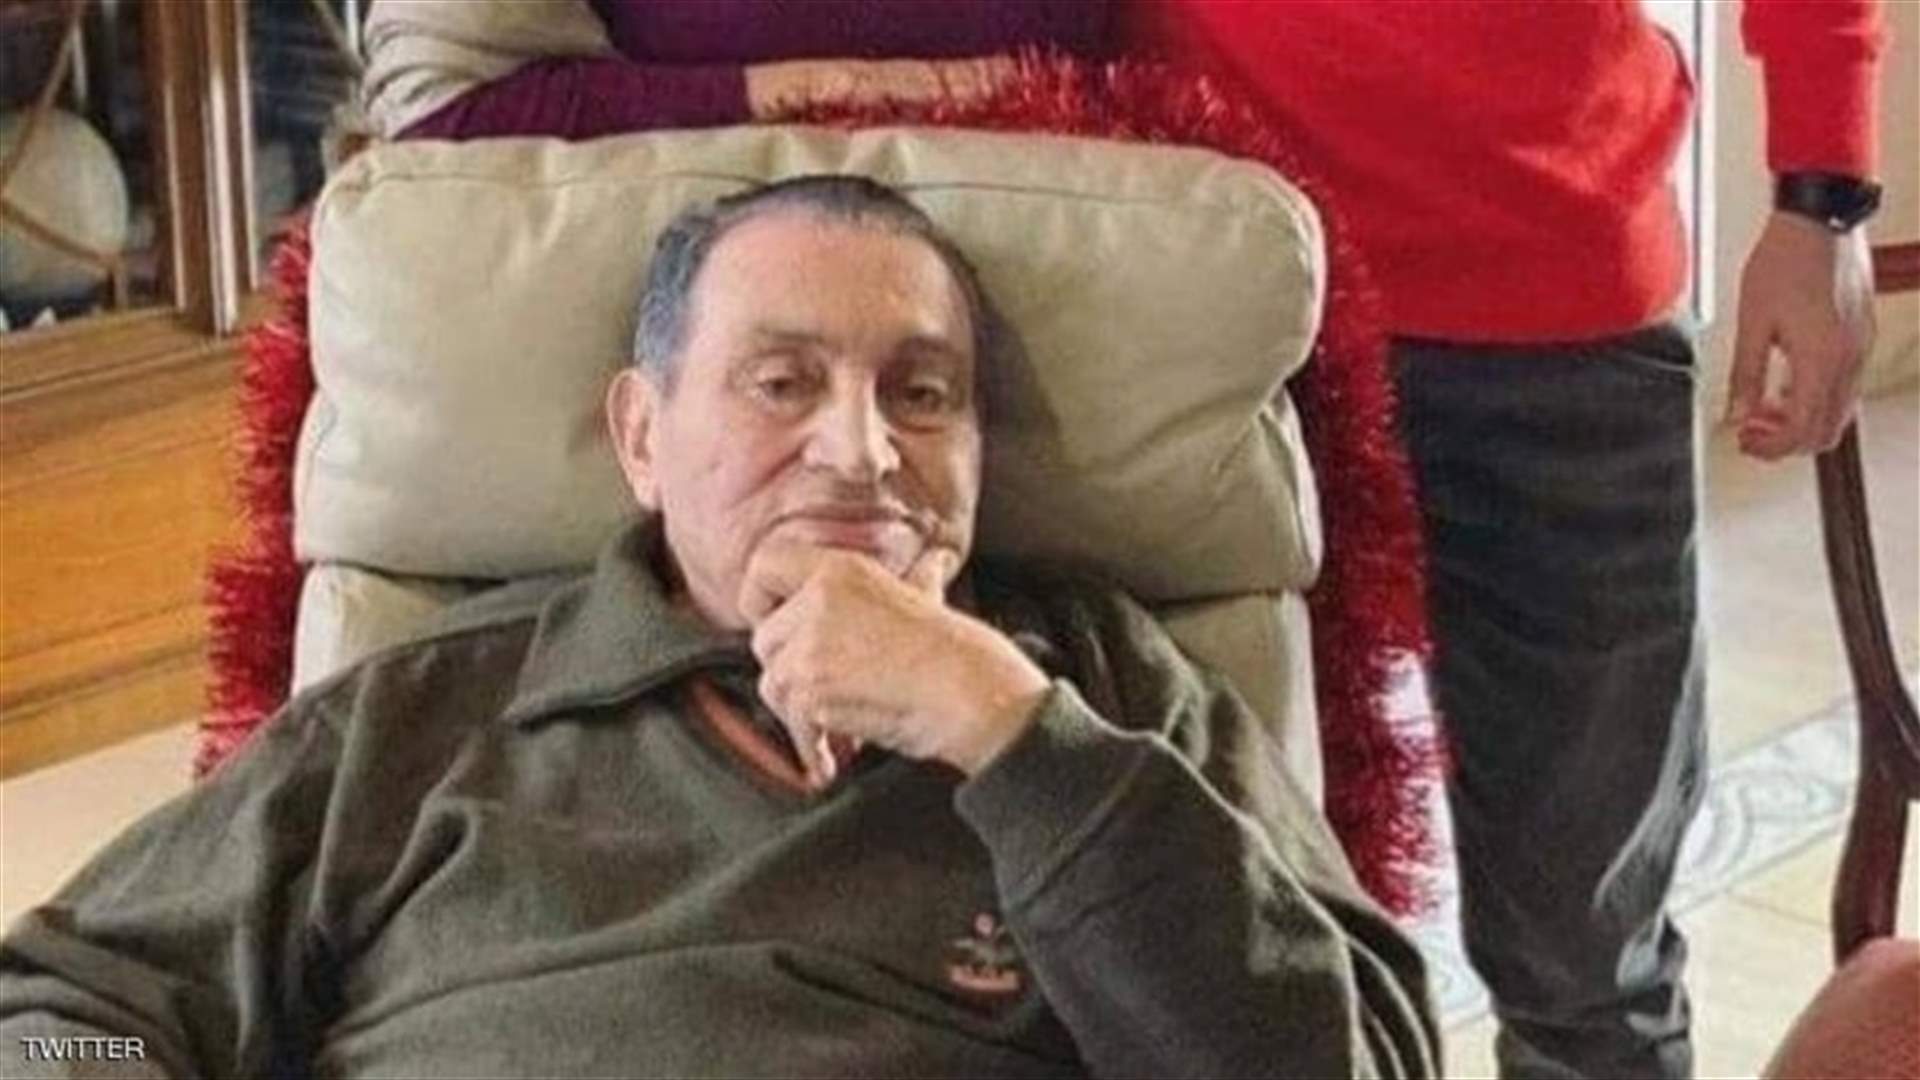 وفاة الرئيس المصري الأسبق حسني مبارك